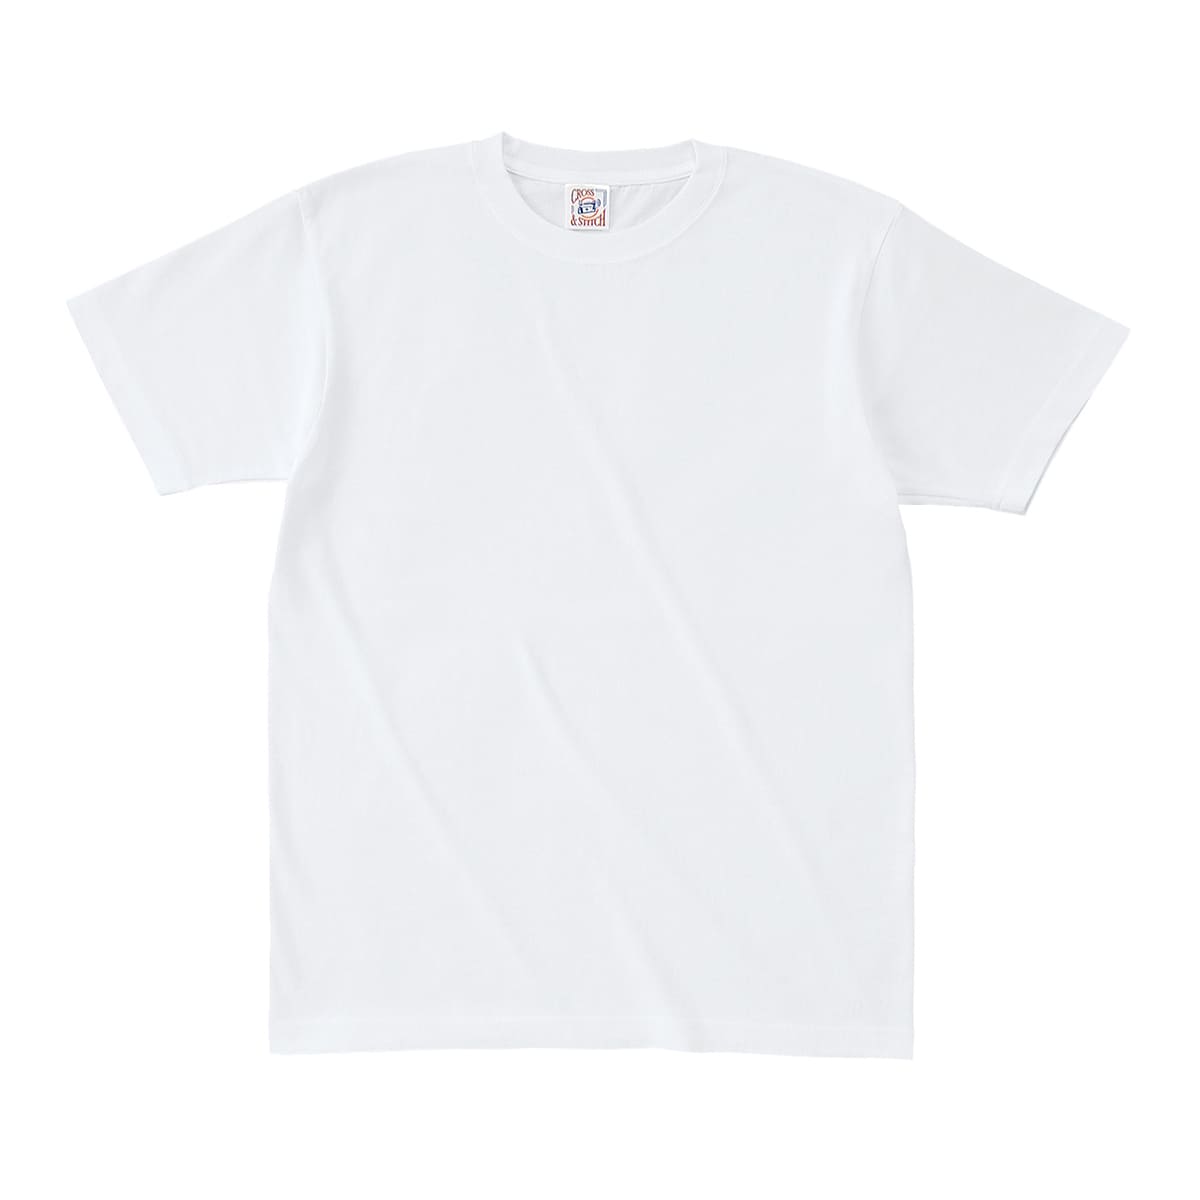 Tシャツ メンズ 半袖 無地 厚手 白 黒 など CROSS STITCH(クロスステッチ) 6.2...